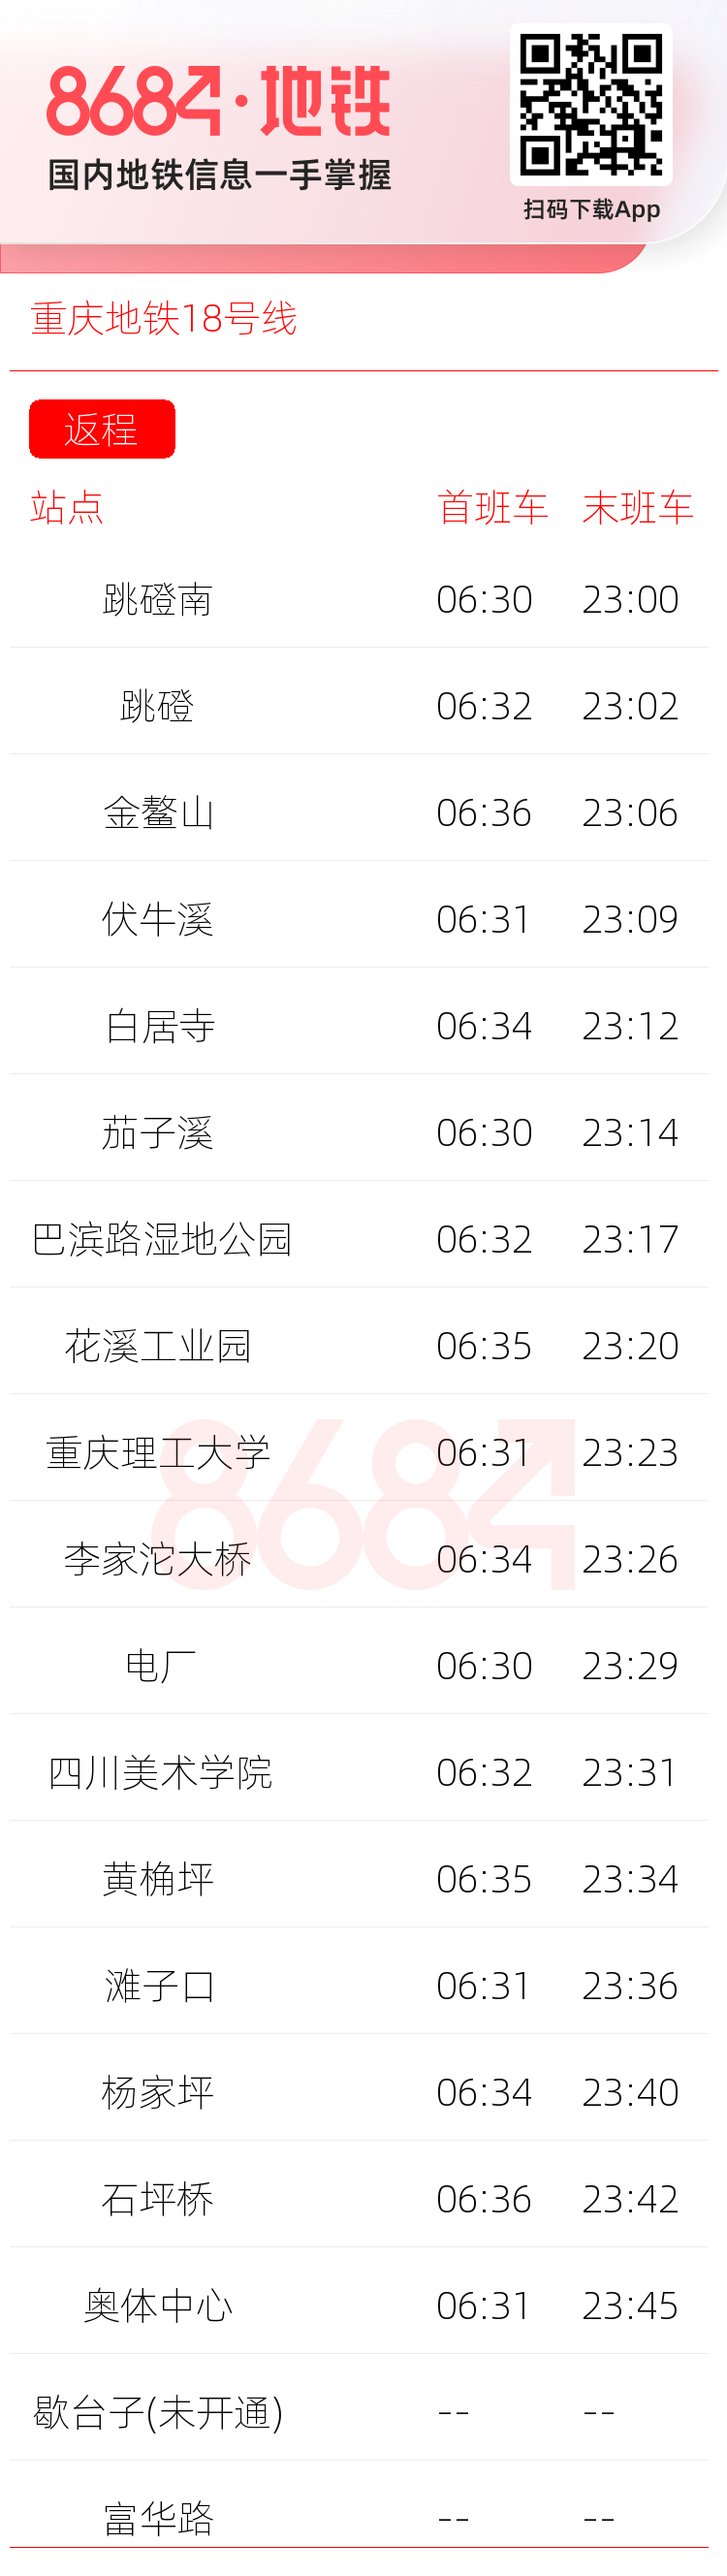 重庆地铁18号线运营时间表